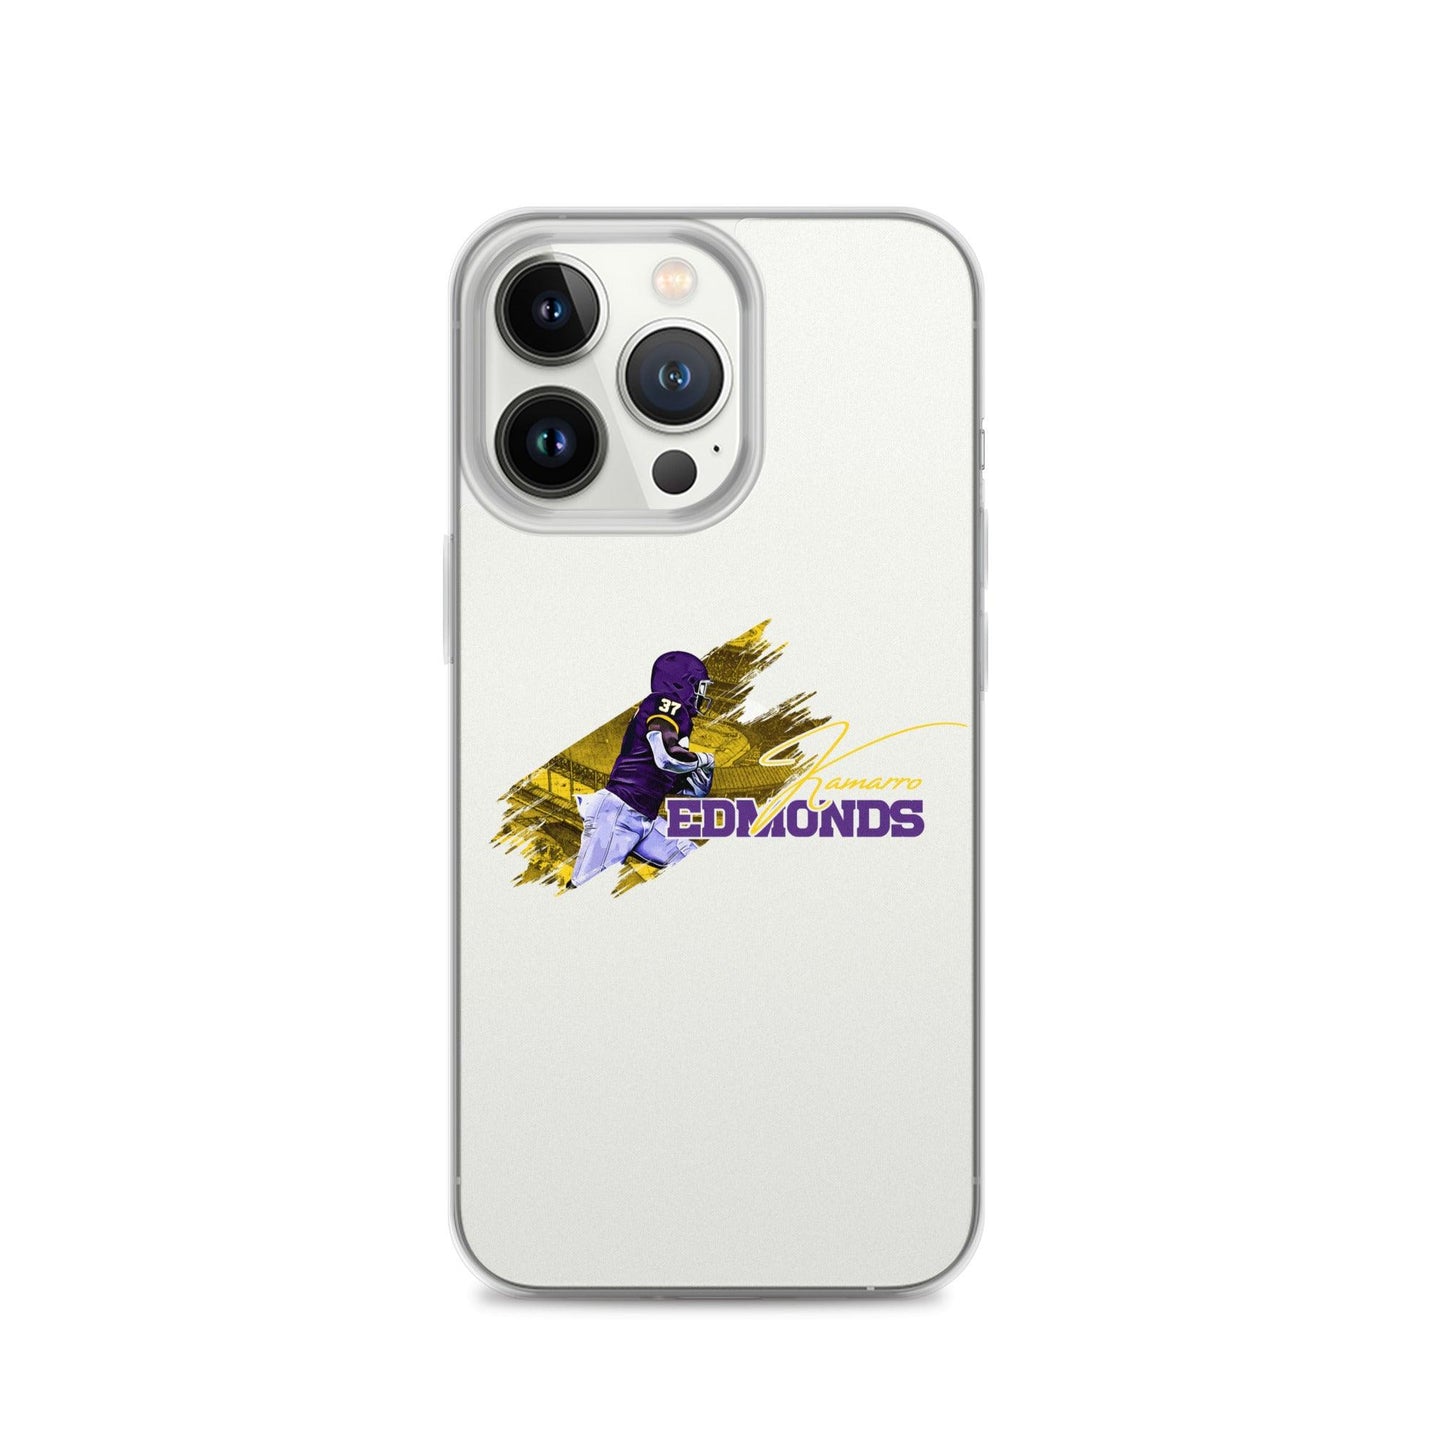 Kamarro Edmonds "Gameday" iPhone Case - Fan Arch